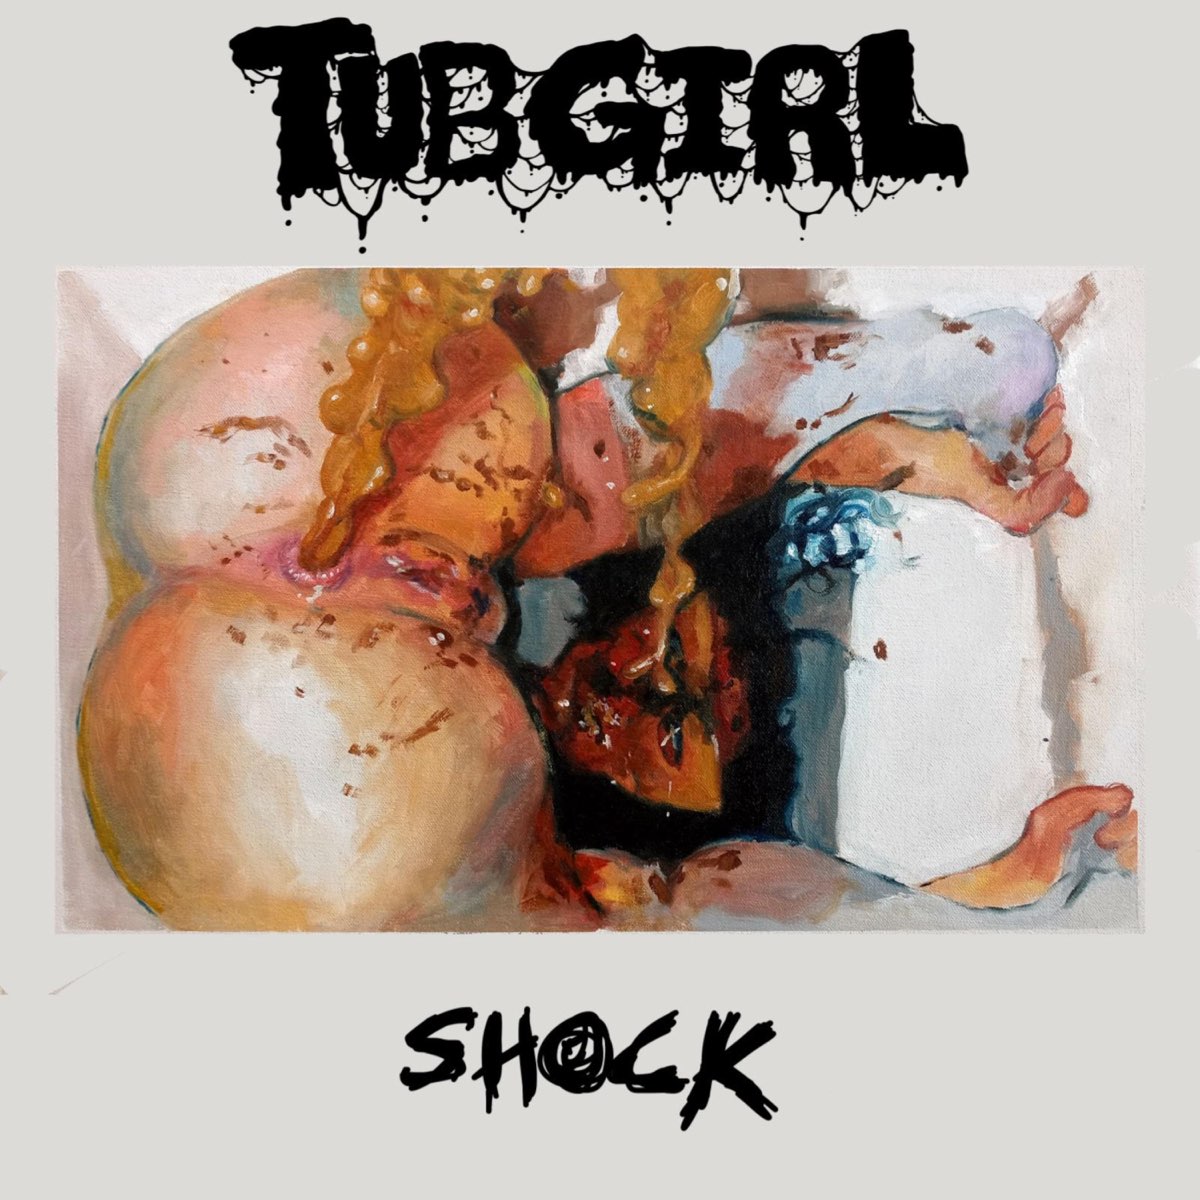 Shock by TubGirl on Apple Music